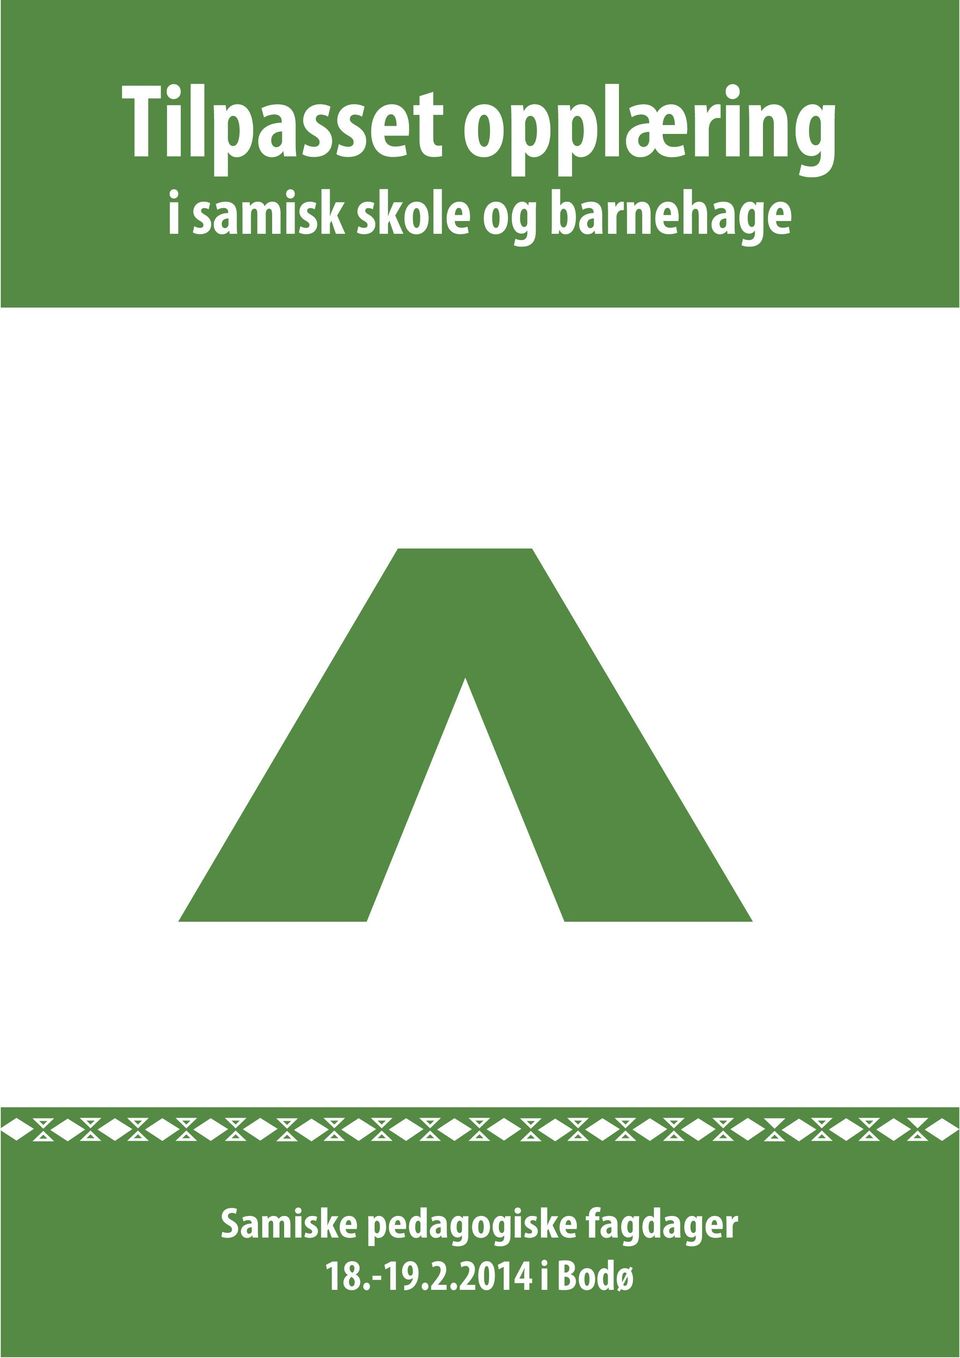 Samiske pedagogiske fagdager 21.-22.